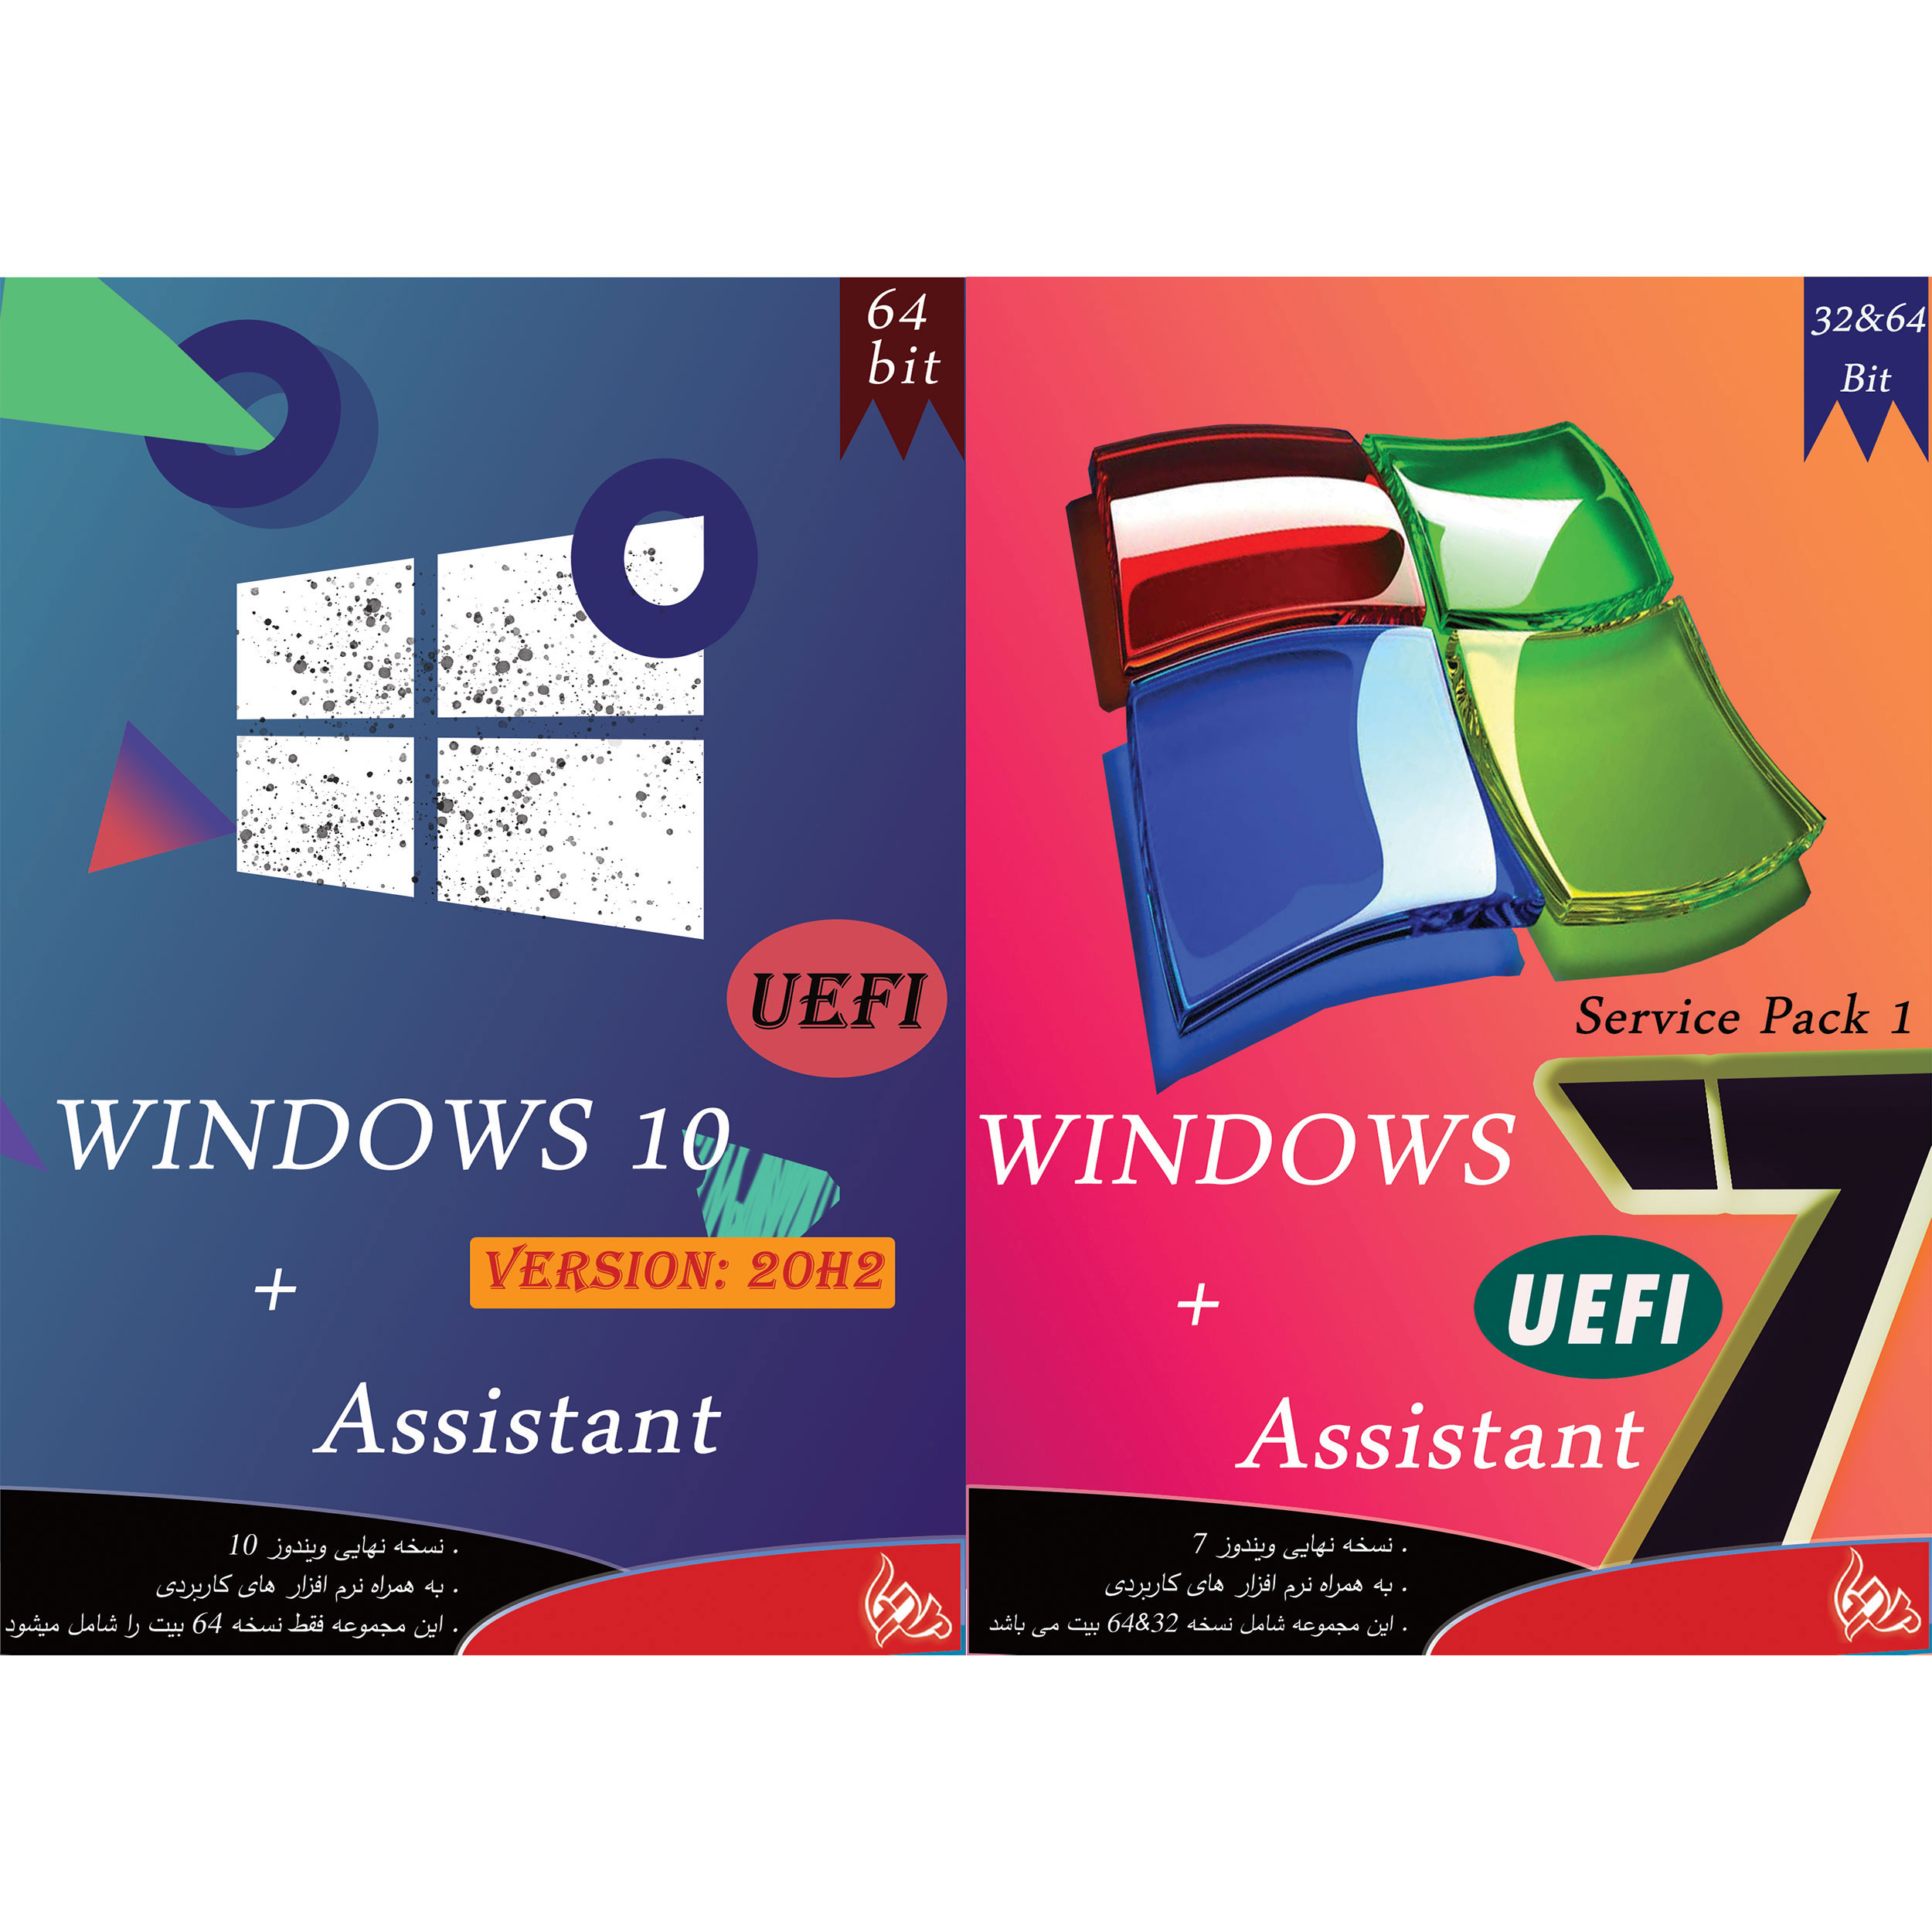 سیستم عامل Windows 10 UEFI + ASSISTANT نشر پدیا به همراه سیستم عامل Windows 7 UEFI + ASSISTANT نشر پدیا 